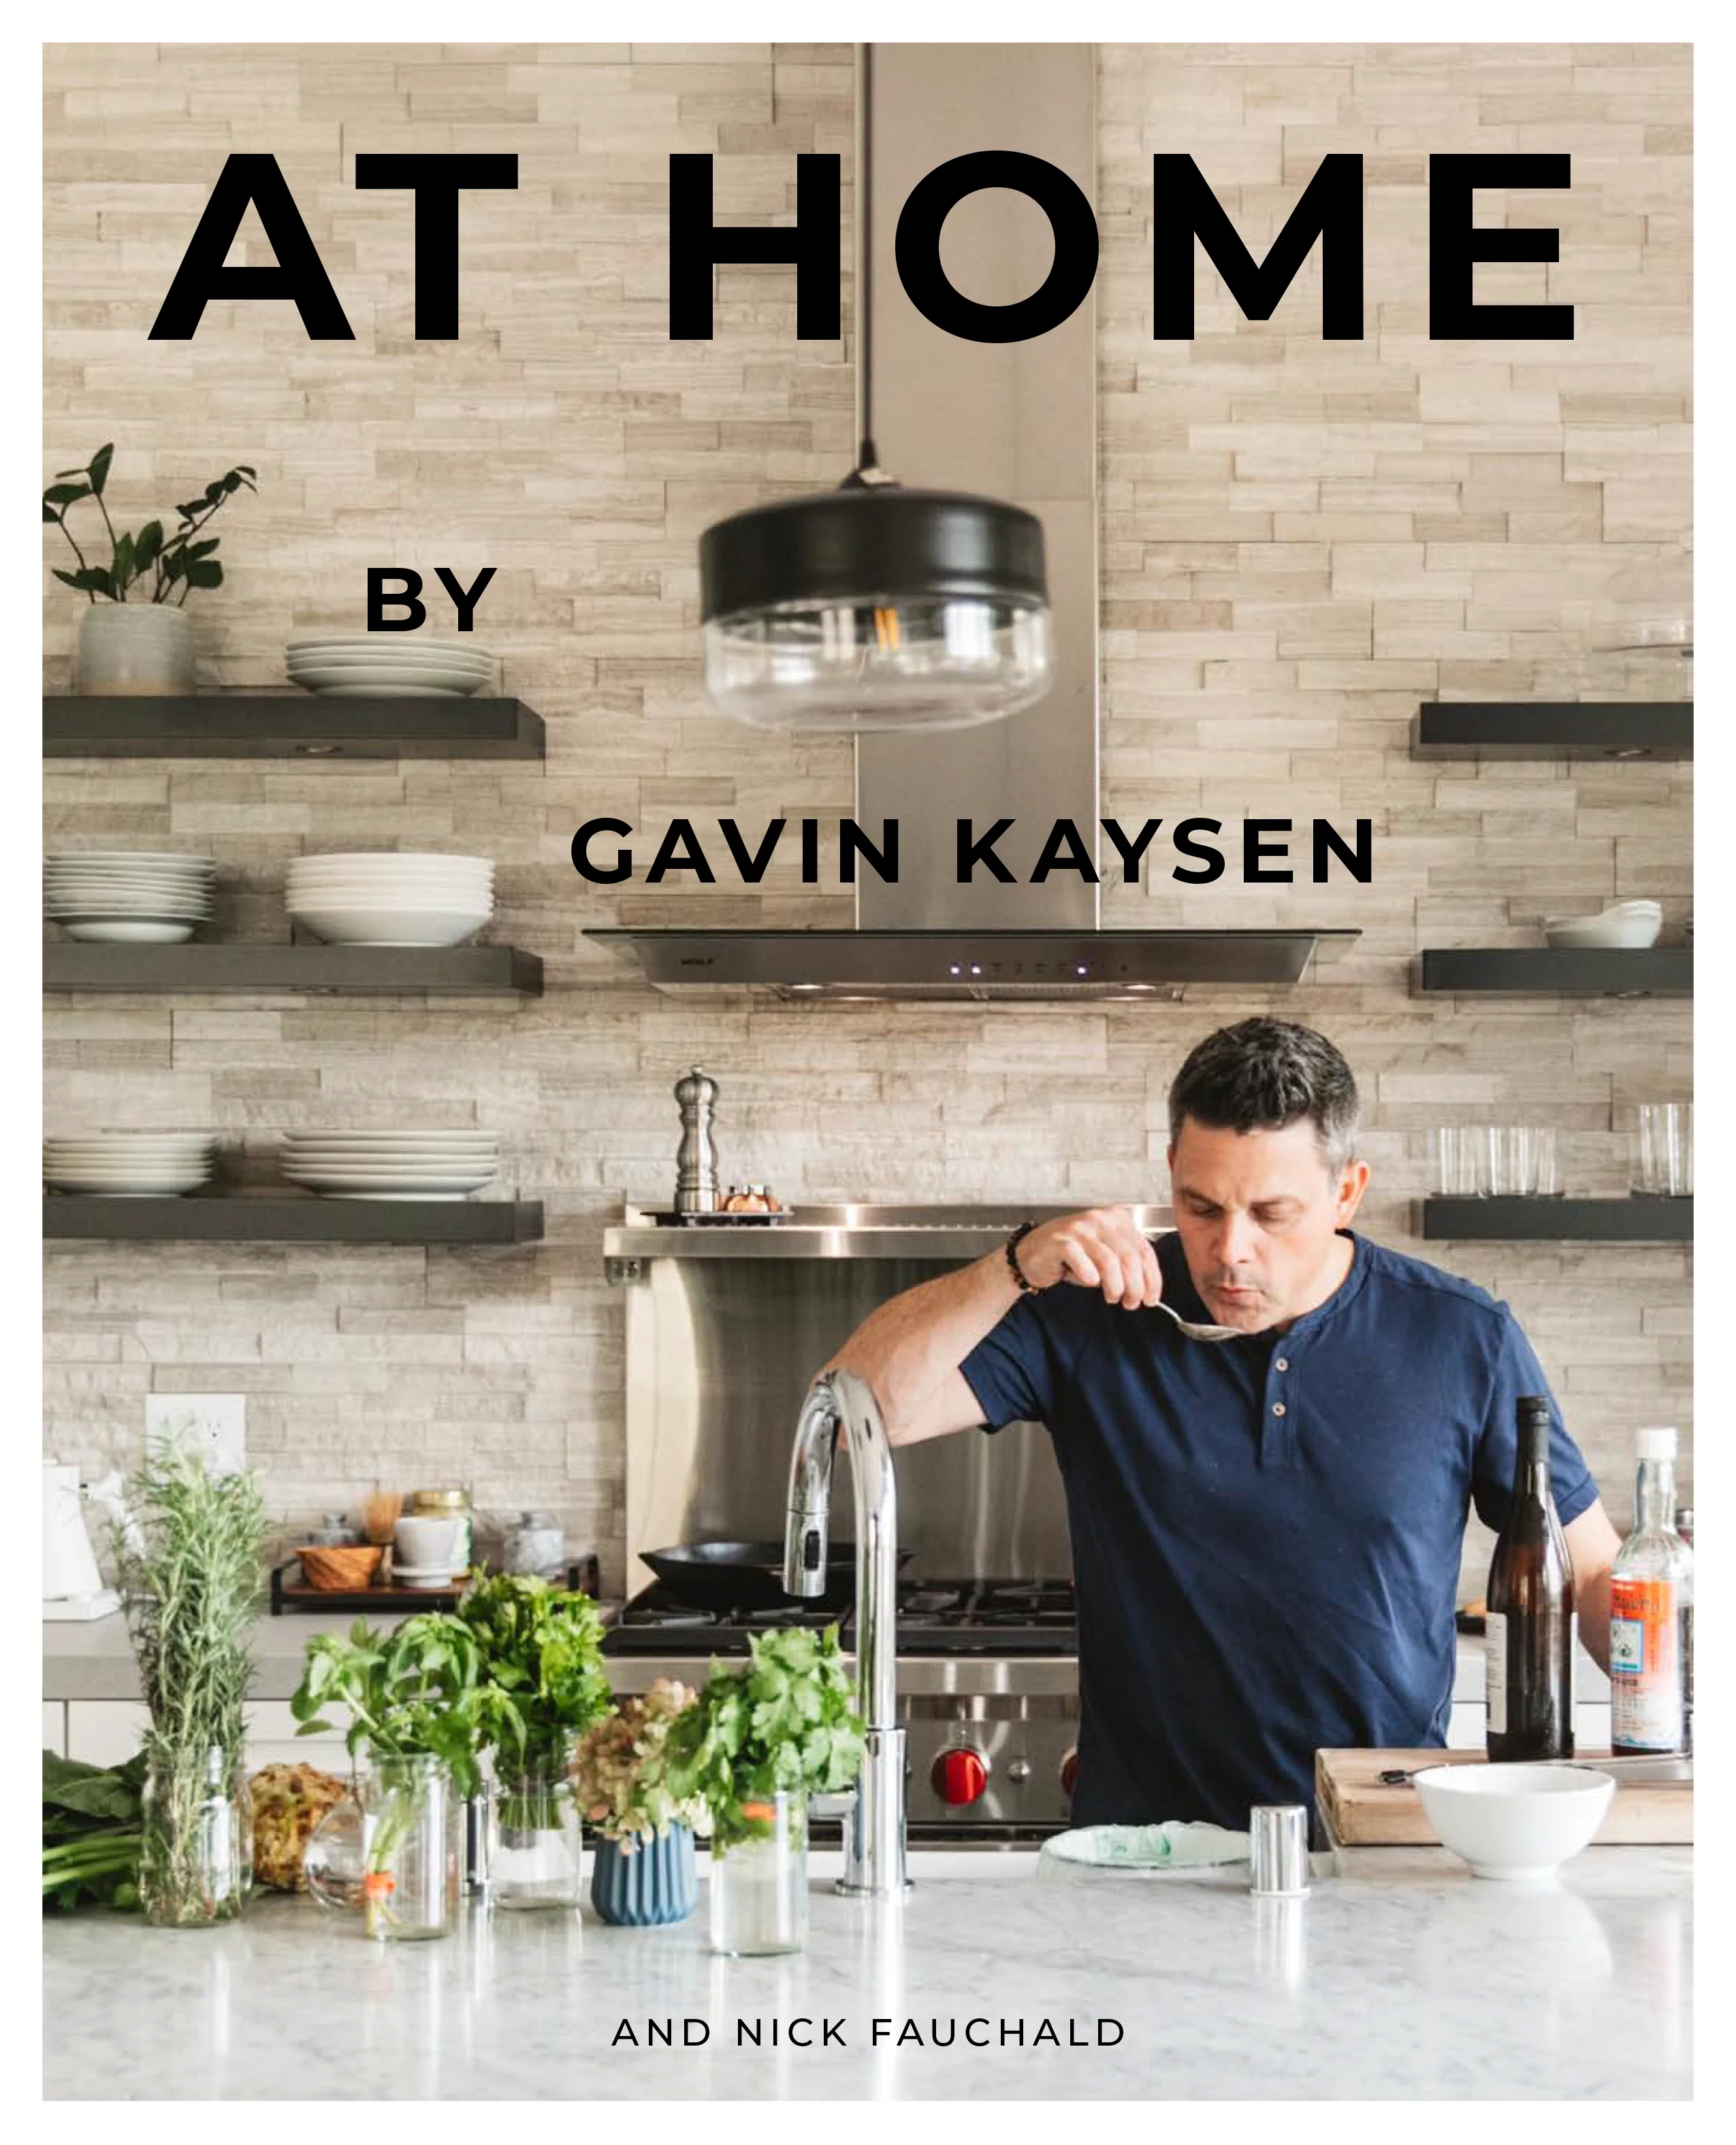 At Home by Gavin Kaysen